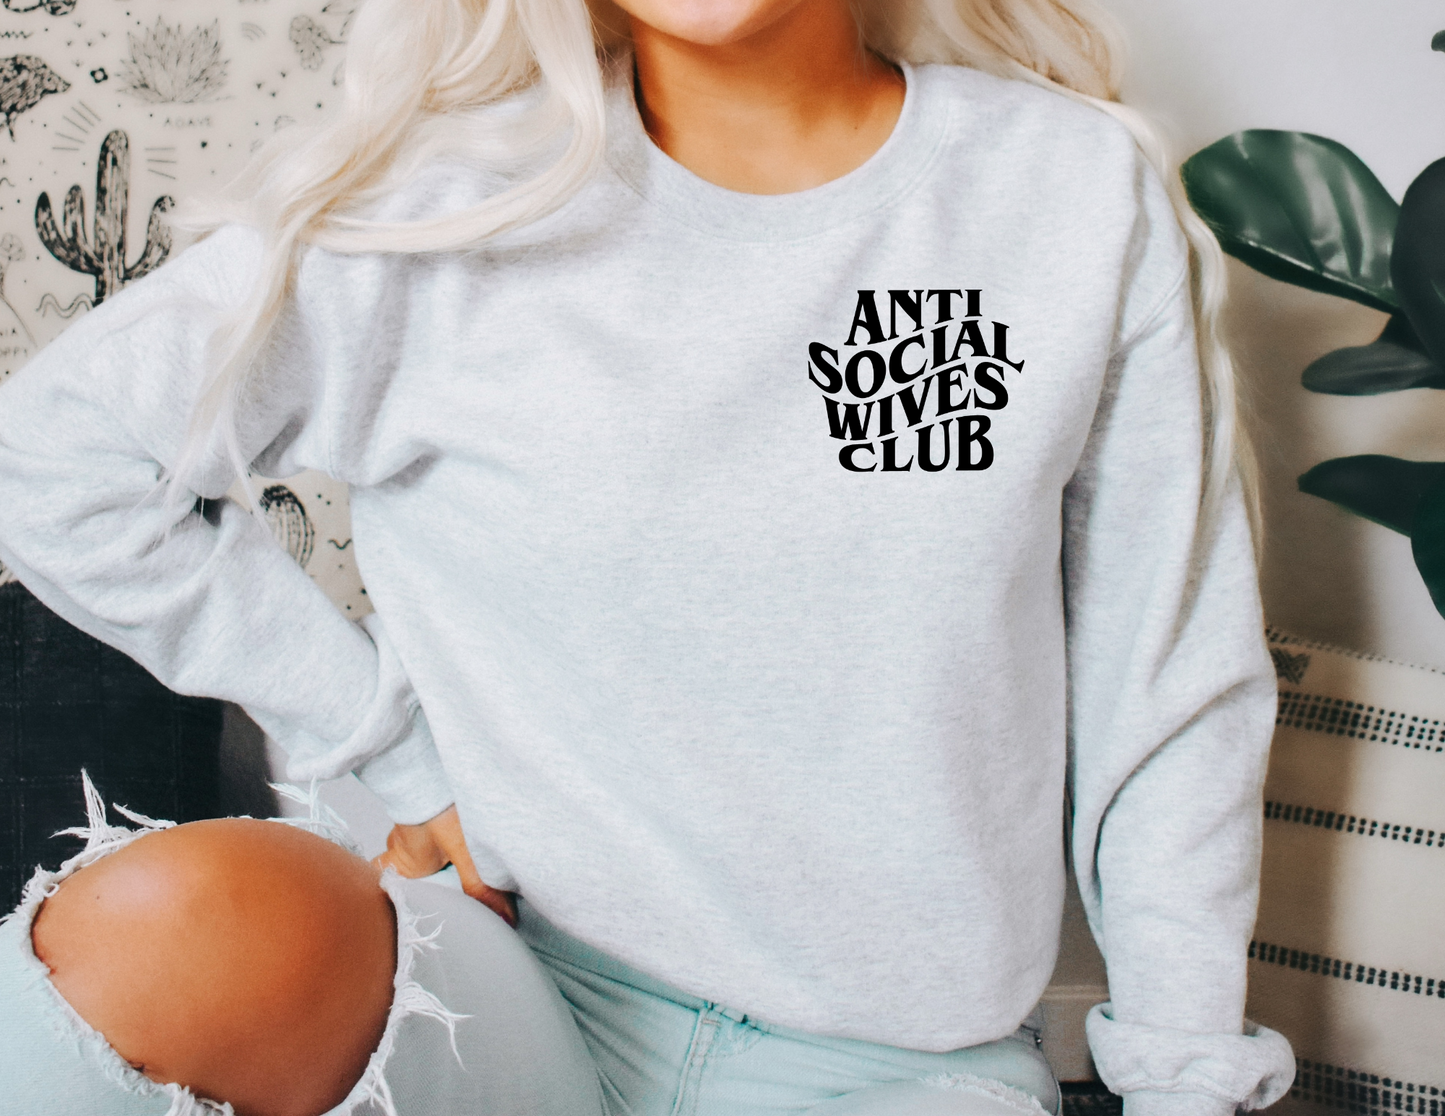 Anti Social Wives Club Sweatshirt